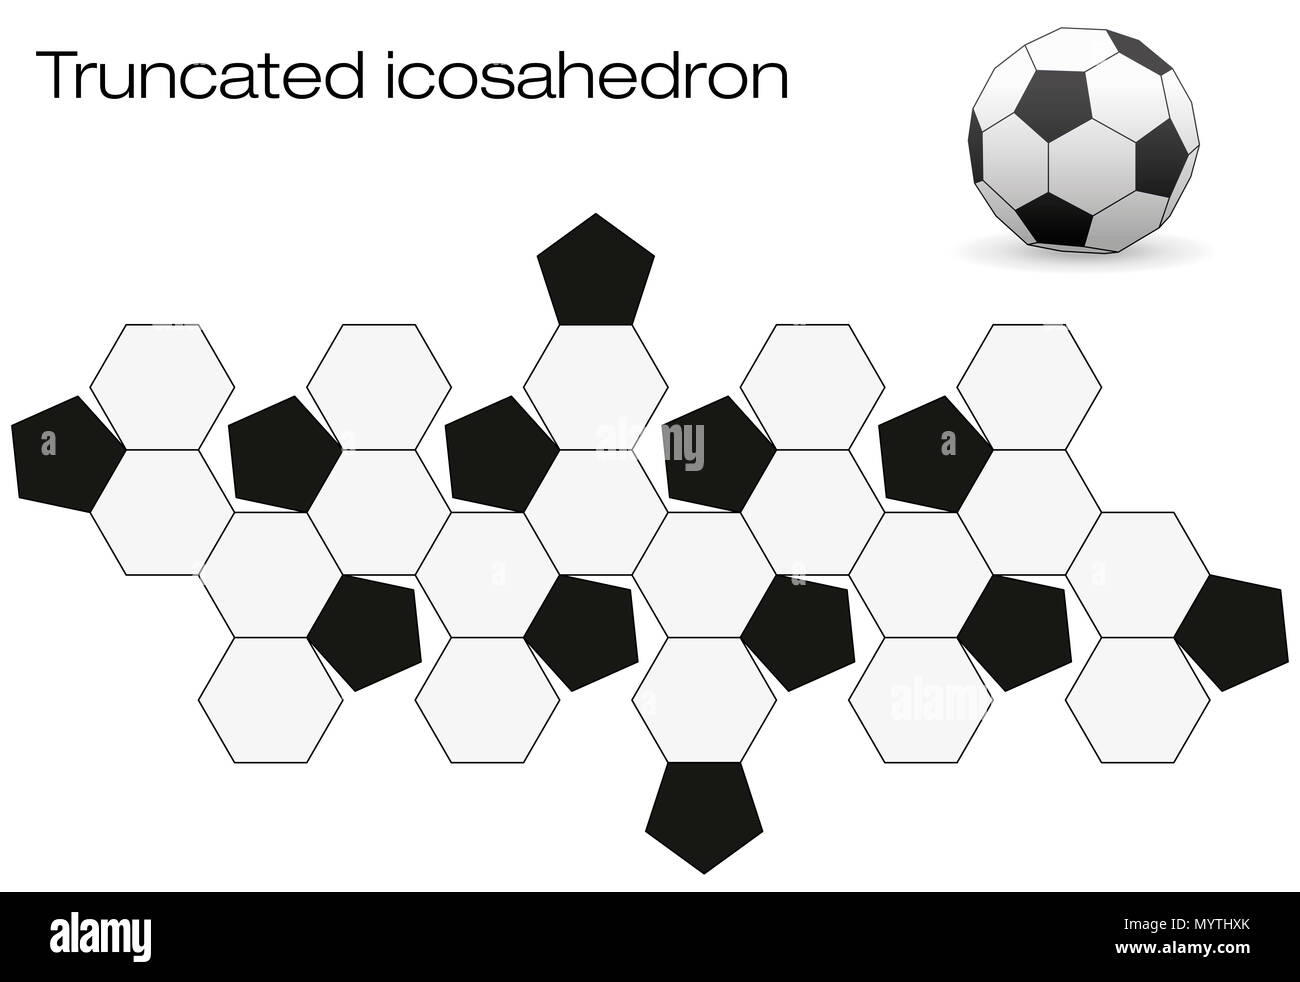 Abgewickelte Fußball Oberfläche. Geometrische Polyeder genannt abgeschnittene Ikosaeder, einem Archimedischen Körper mit 12 schwarze und 20 weiße Gesichter. Stockfoto